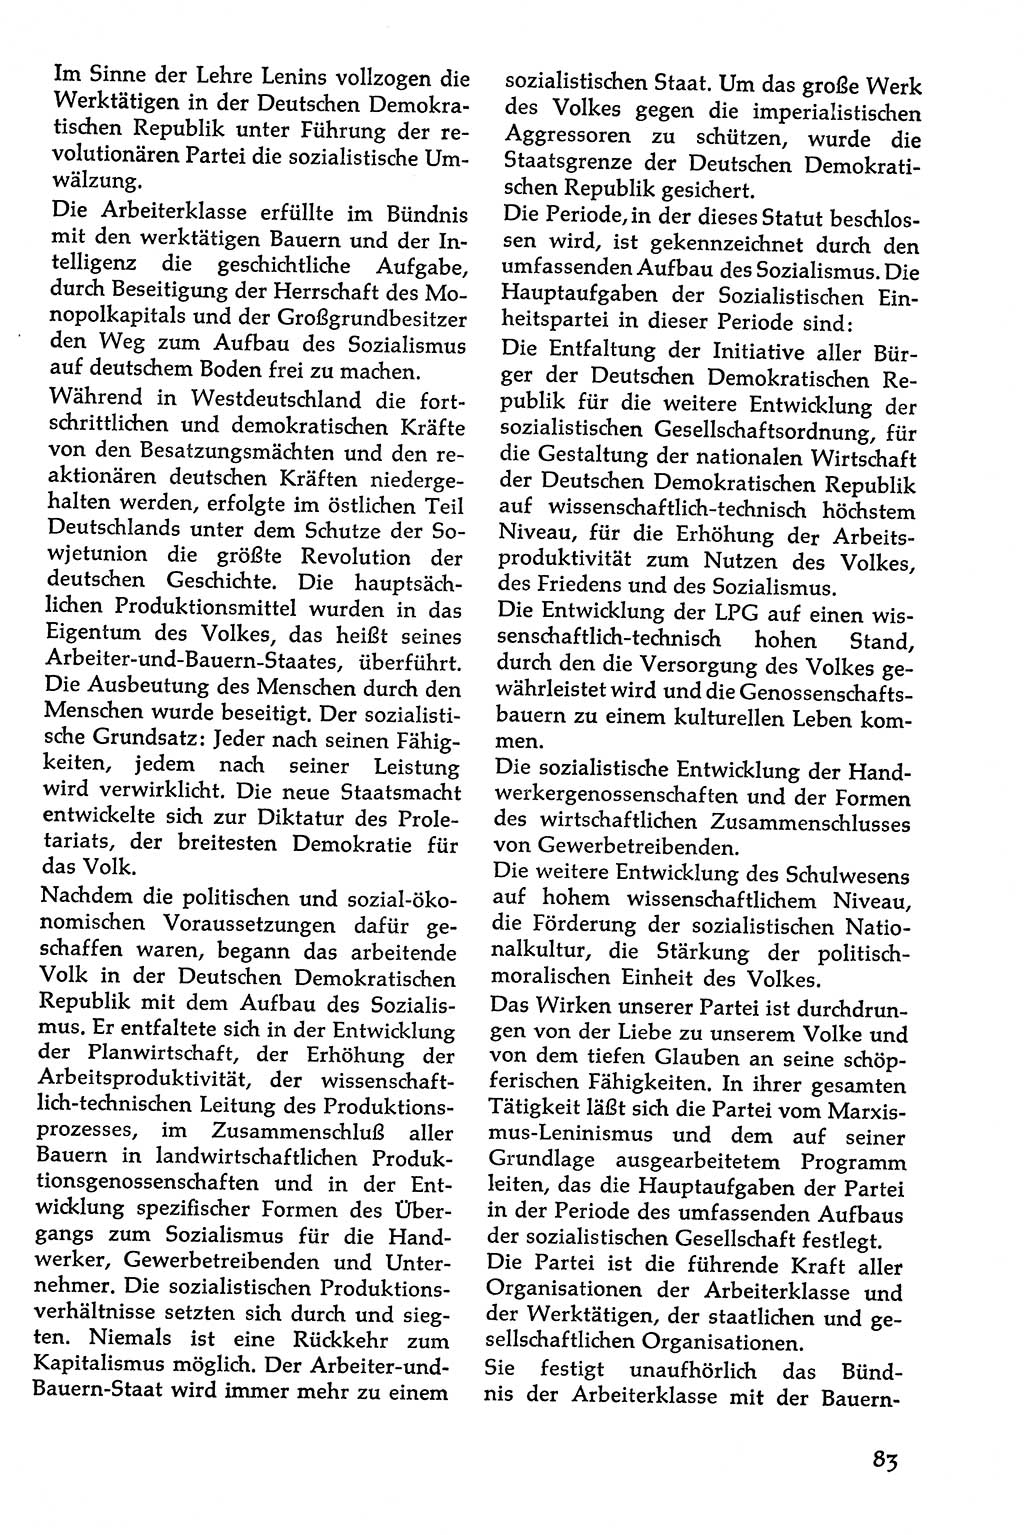 Volksdemokratische Ordnung in Mitteldeutschland [Deutsche Demokratische Republik (DDR)], Texte zur verfassungsrechtlichen Situation 1963, Seite 83 (Volksdem. Ordn. Md. DDR 1963, S. 83)